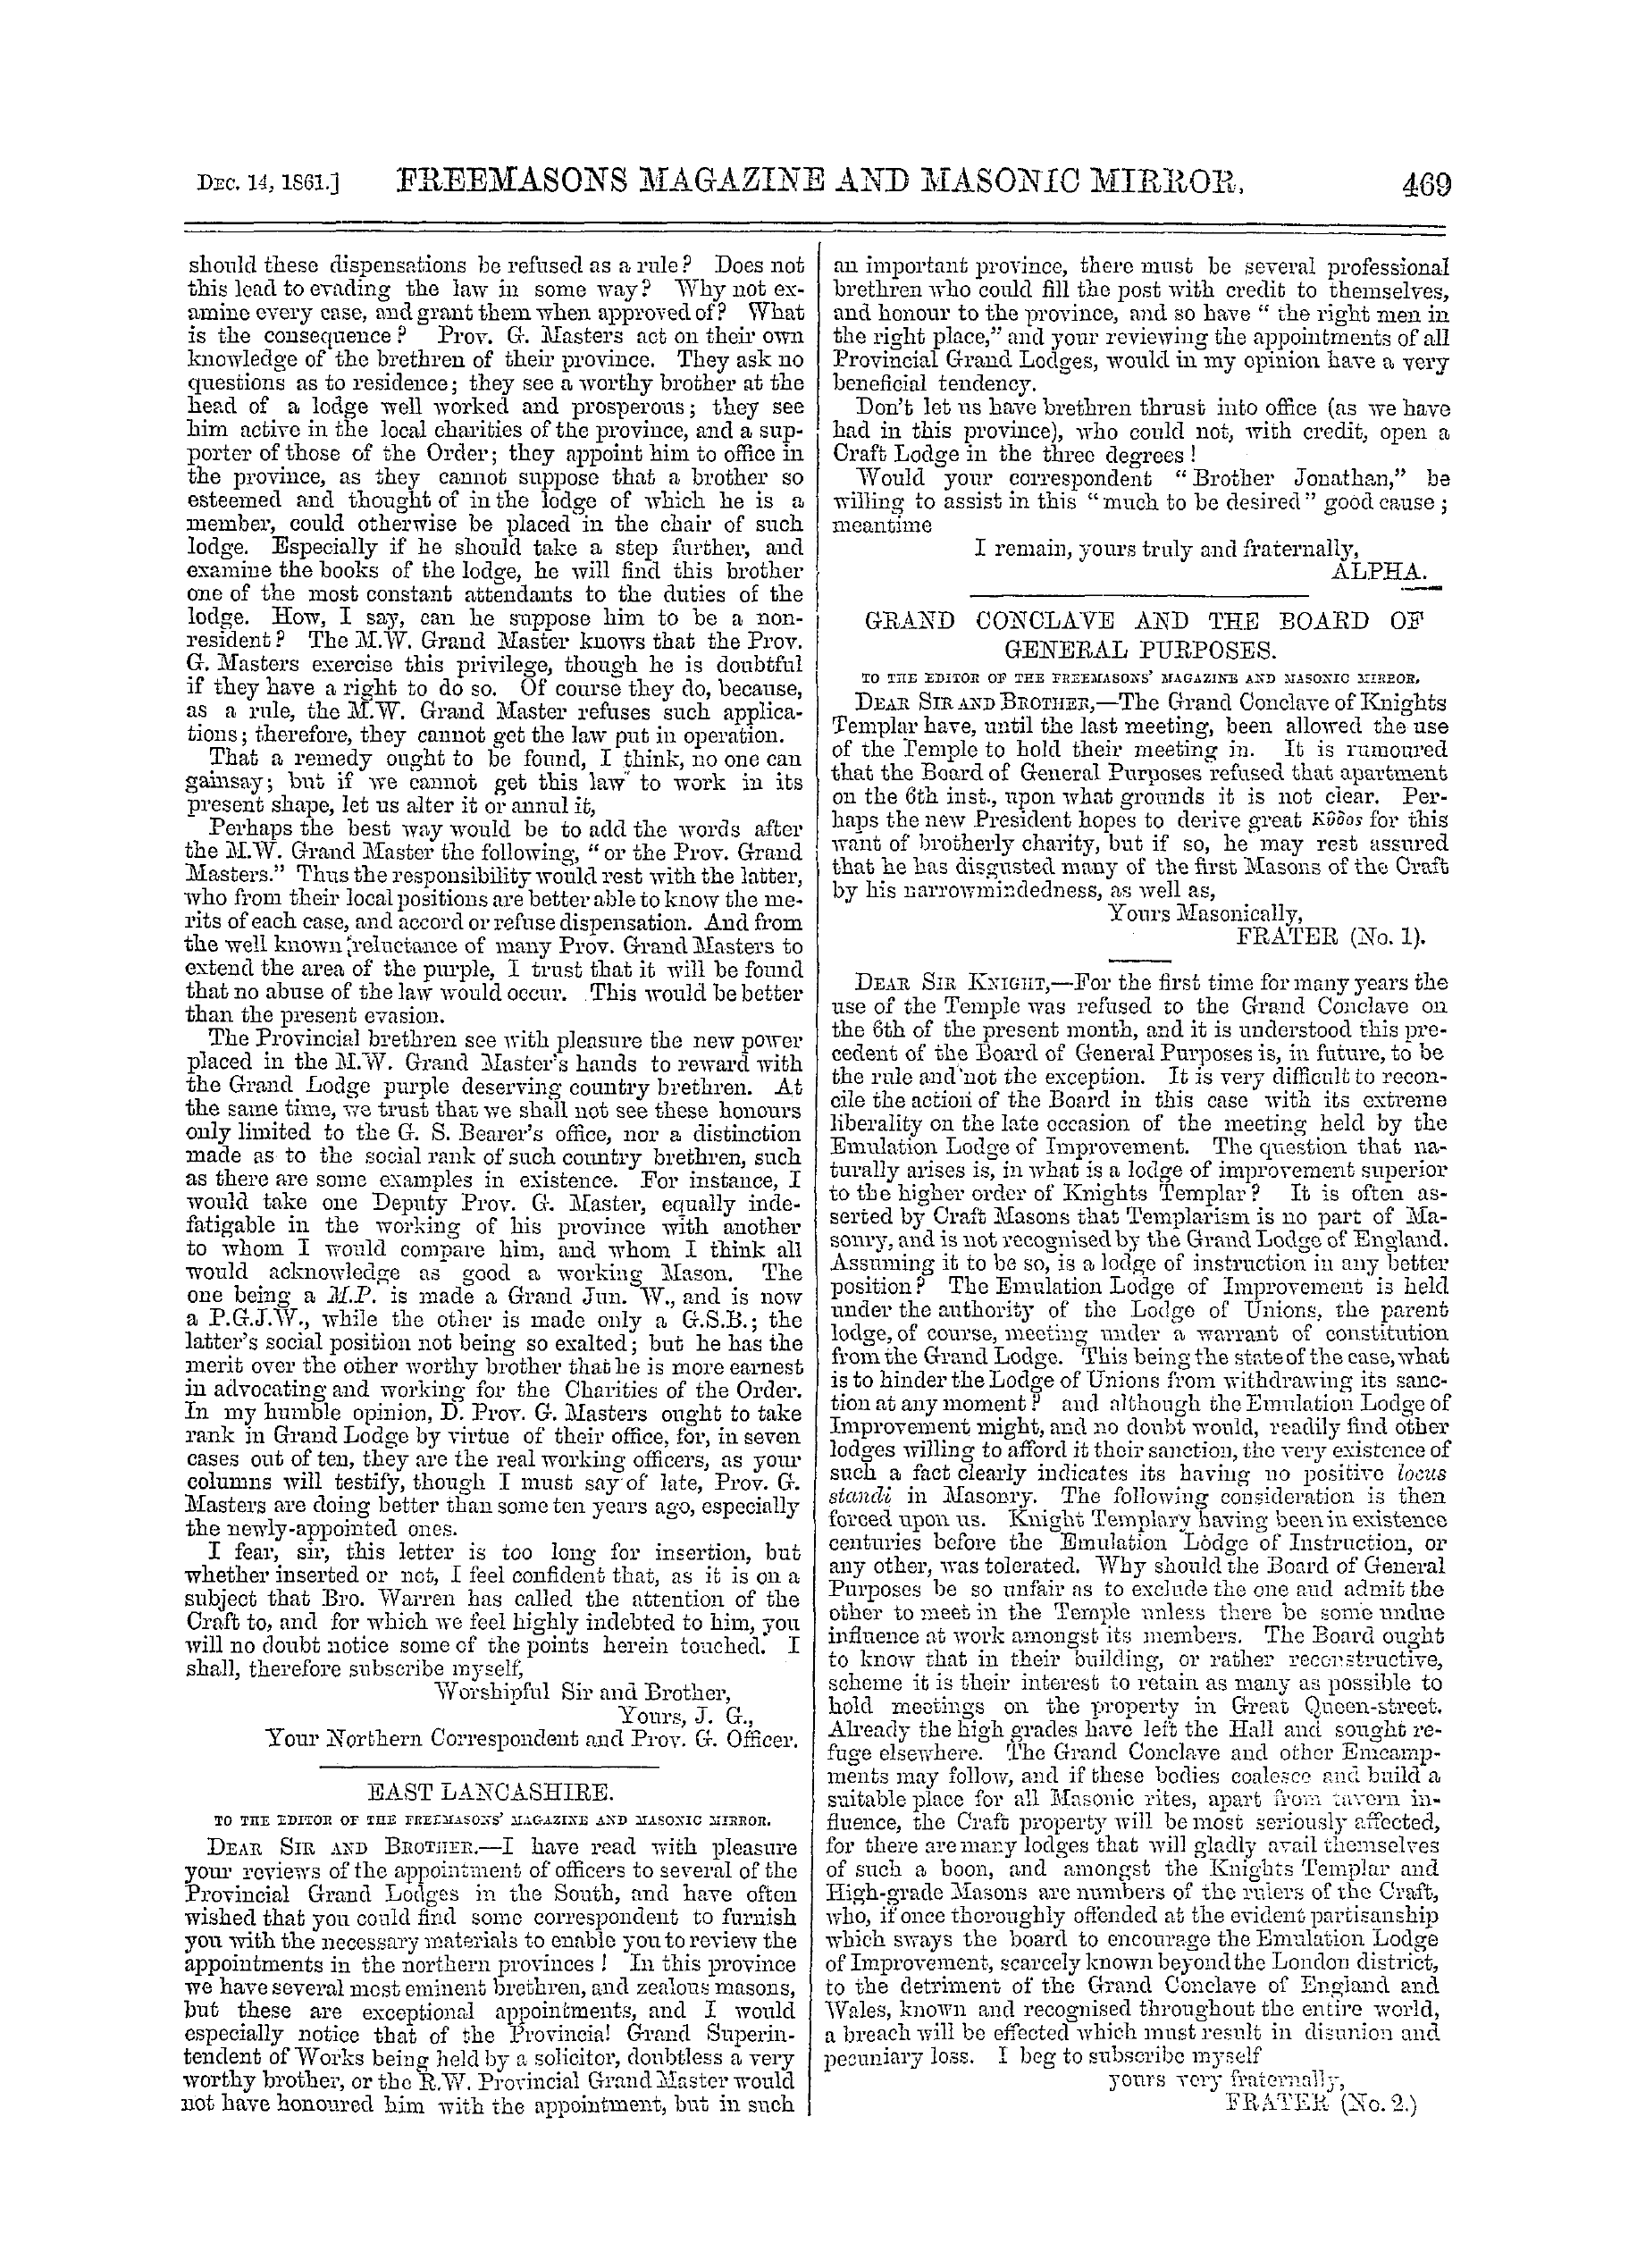 The Freemasons' Monthly Magazine: 1861-12-14: 9